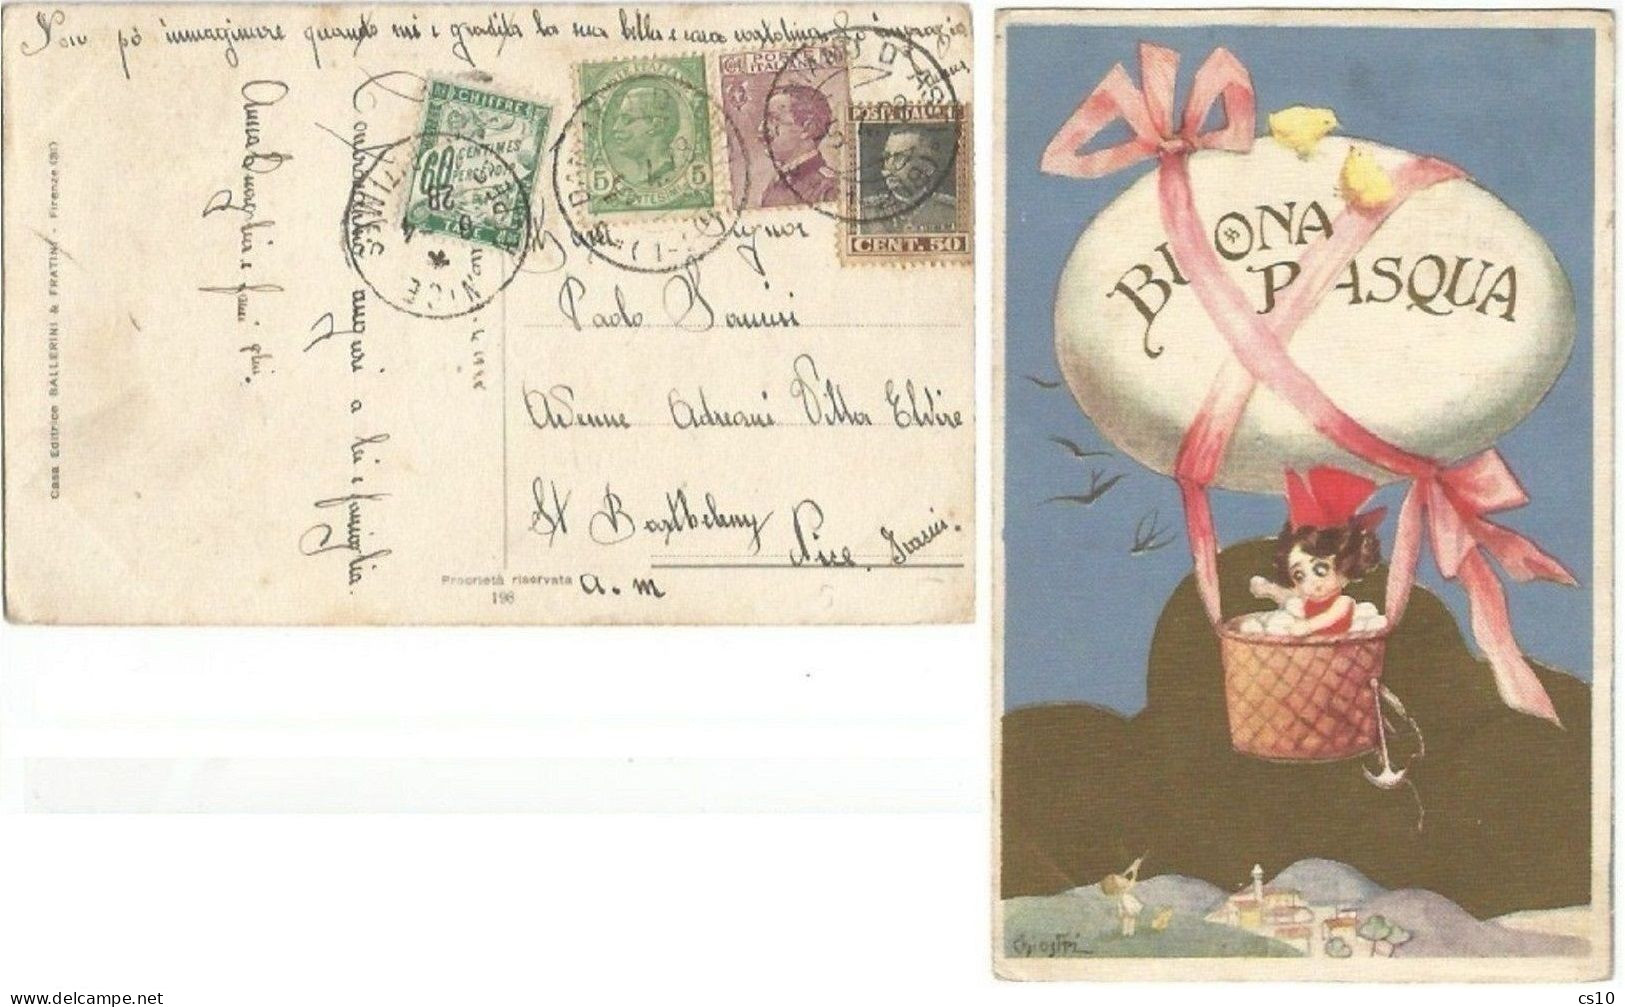 Cartolina Illustratore Chiostri - Buona Pasqua Da S.Damiano Asti 5apr1928 X Francia Tassata C.60 Verde - Briefe U. Dokumente